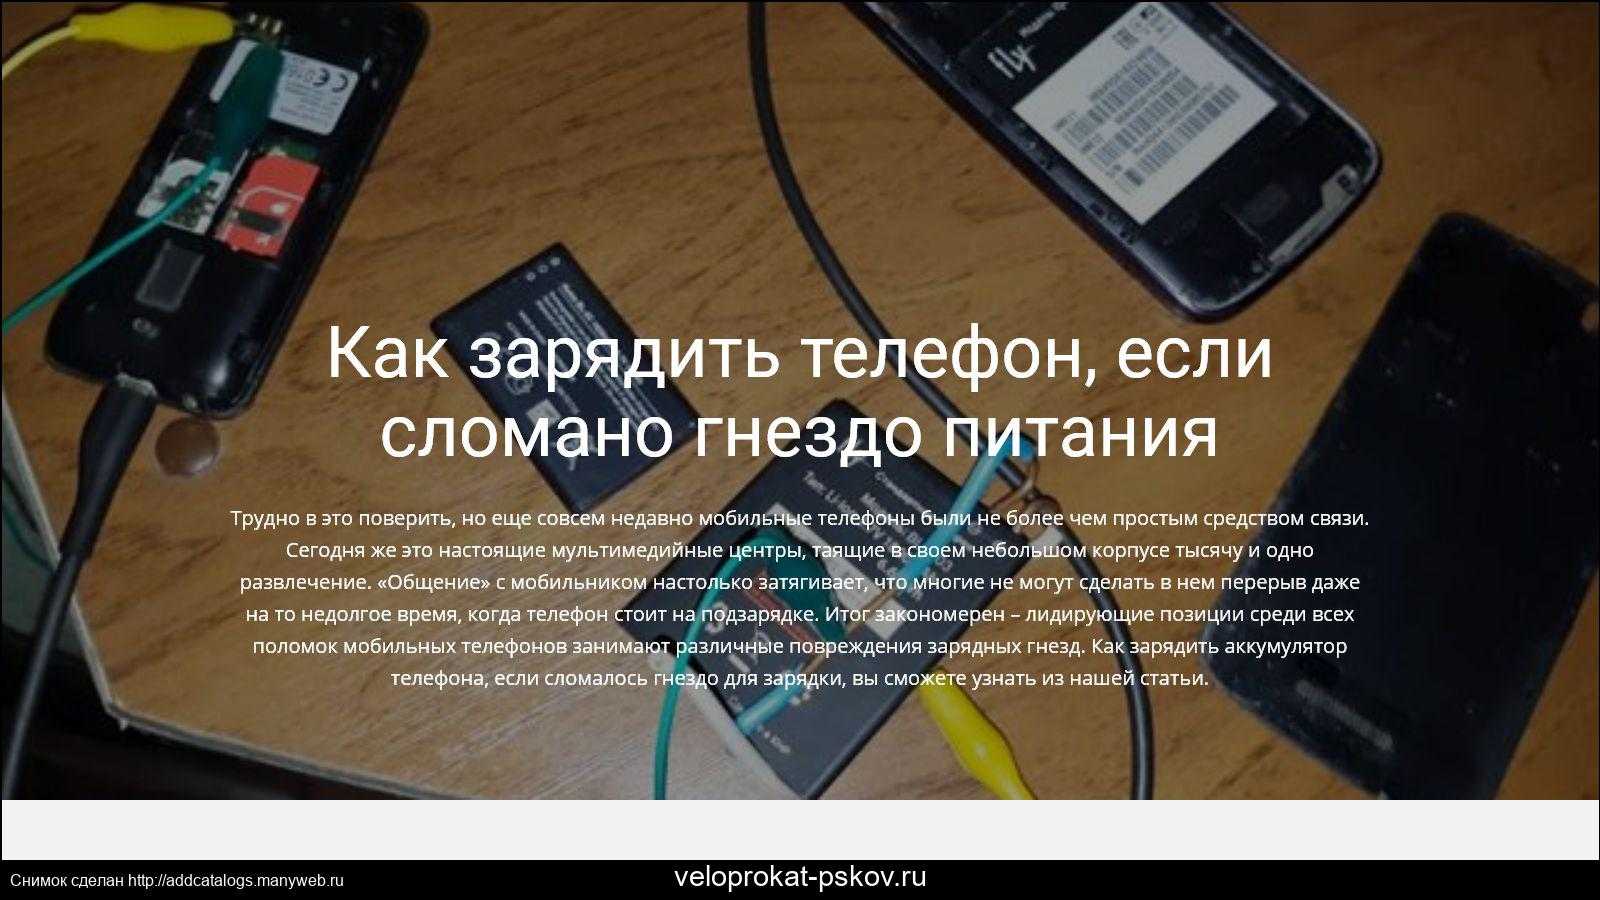 Как зарядить телефон, если сломано гнездо зарядки тарифкин.ру
как зарядить телефон, если сломано гнездо зарядки